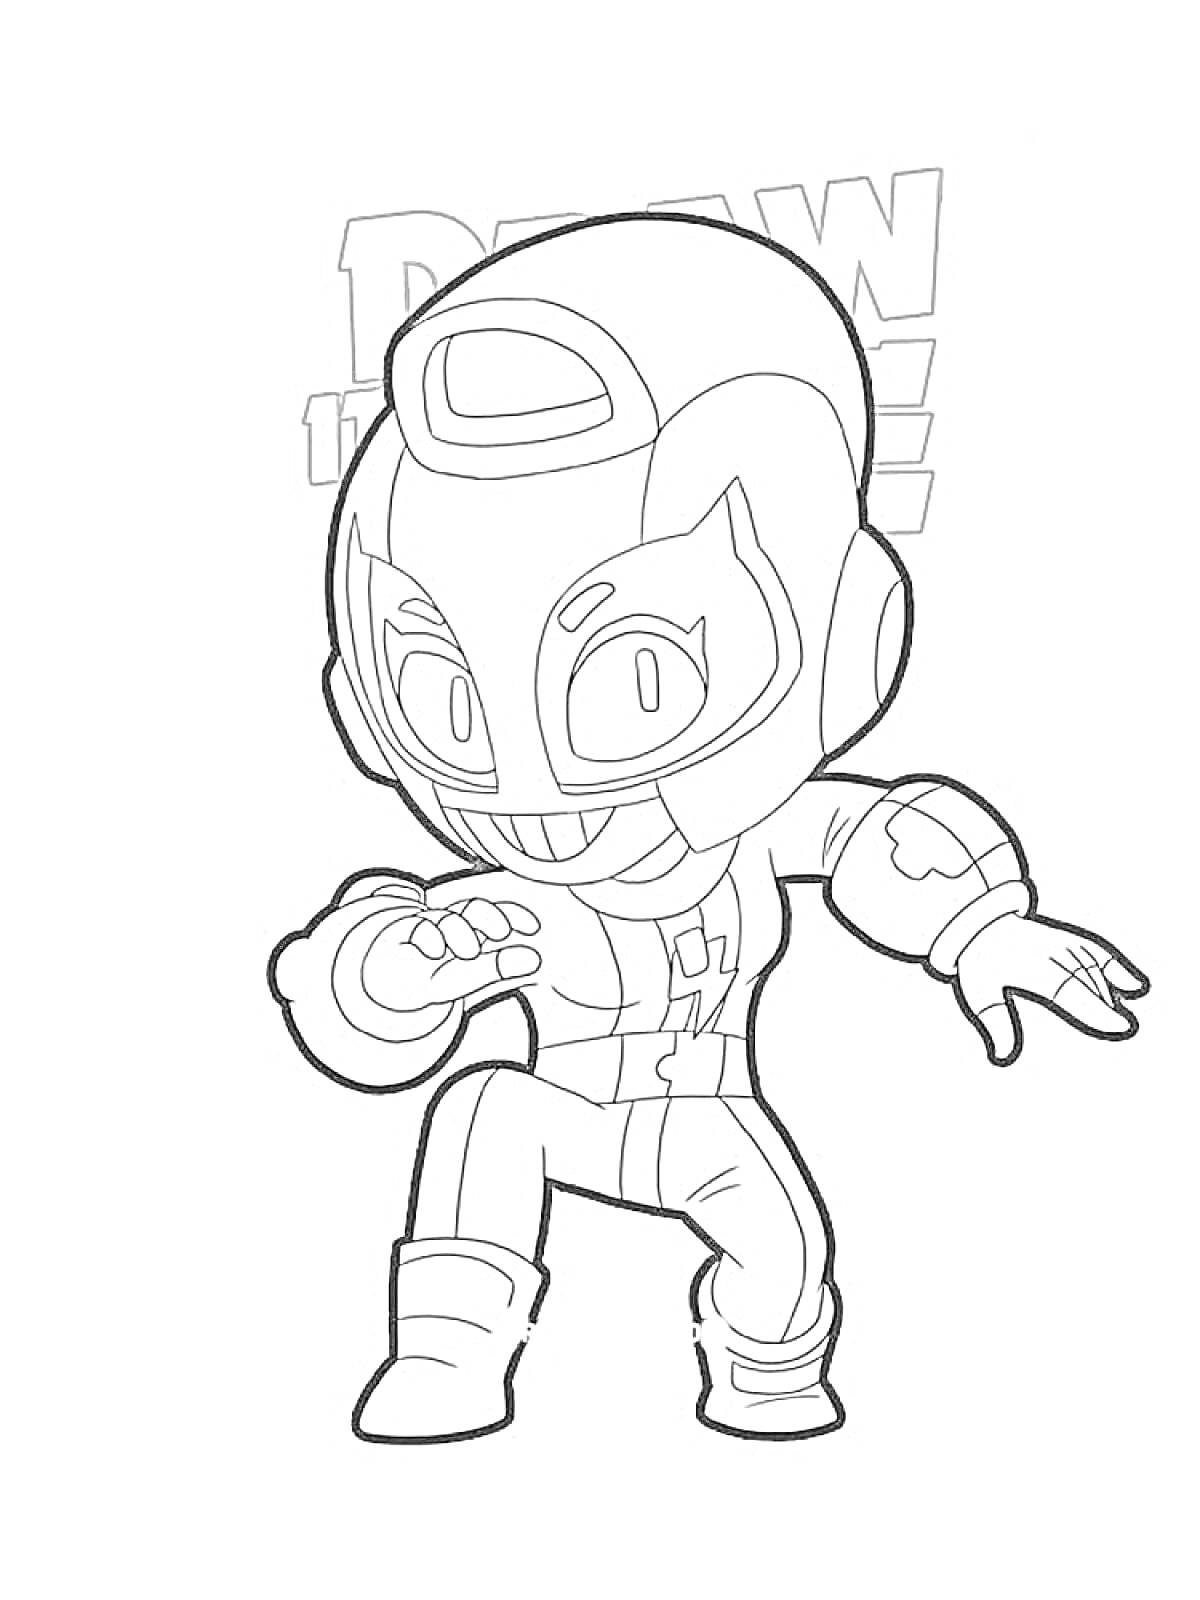 Раскраска Рисунок супергероя в маске и костюме, стоящего в боевой позе